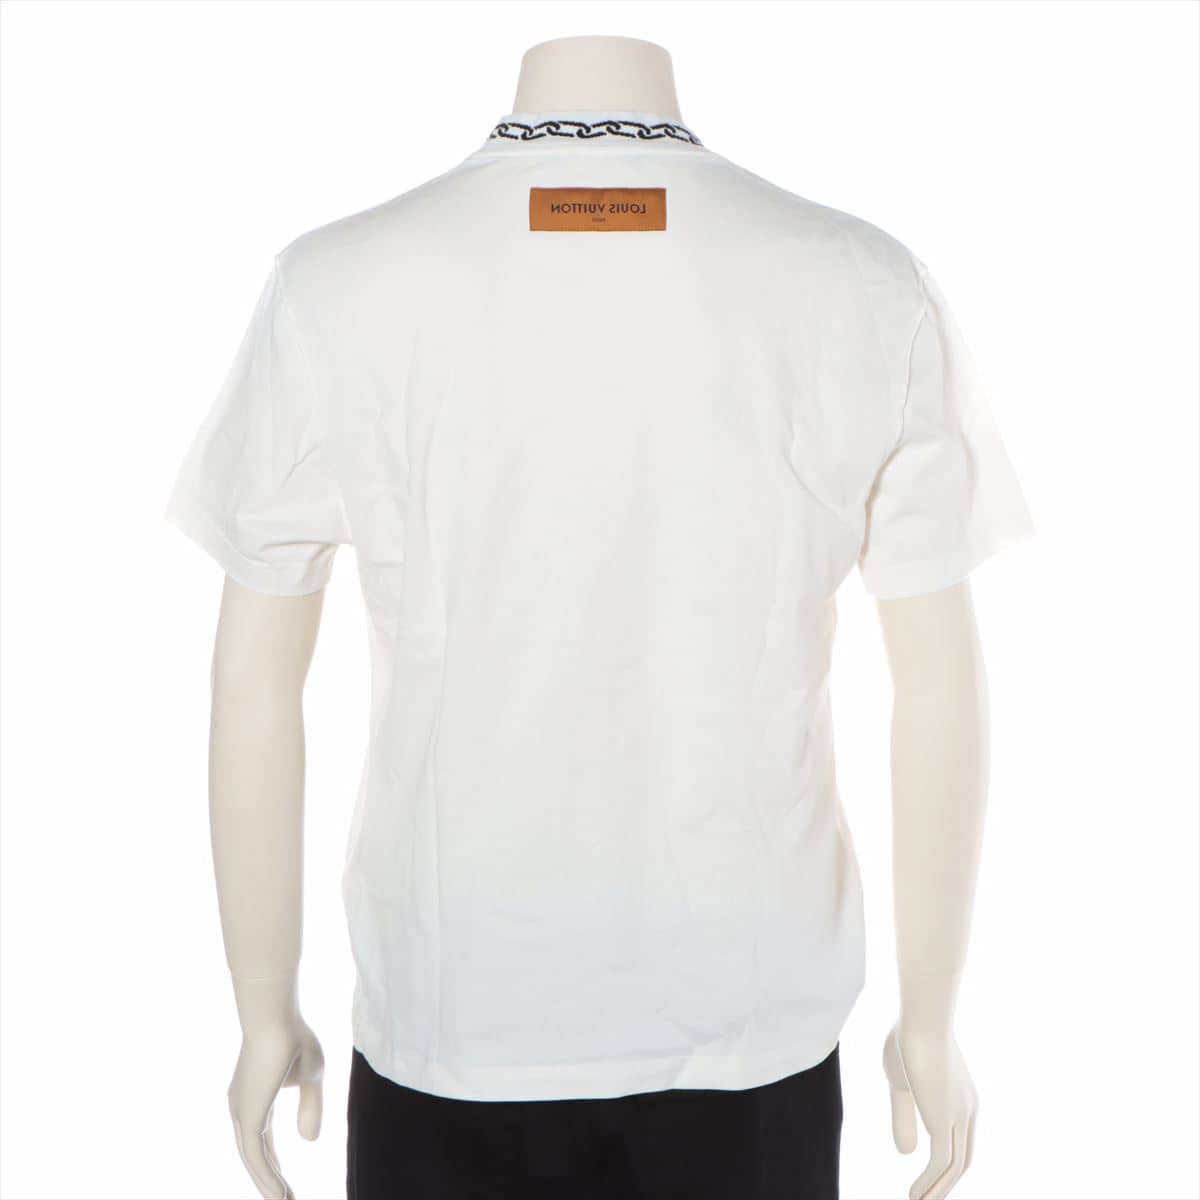 ルイヴィトン RM201M コットン Tシャツ S メンズ ホワイト  ウィズチェーンジャガードリブカラー